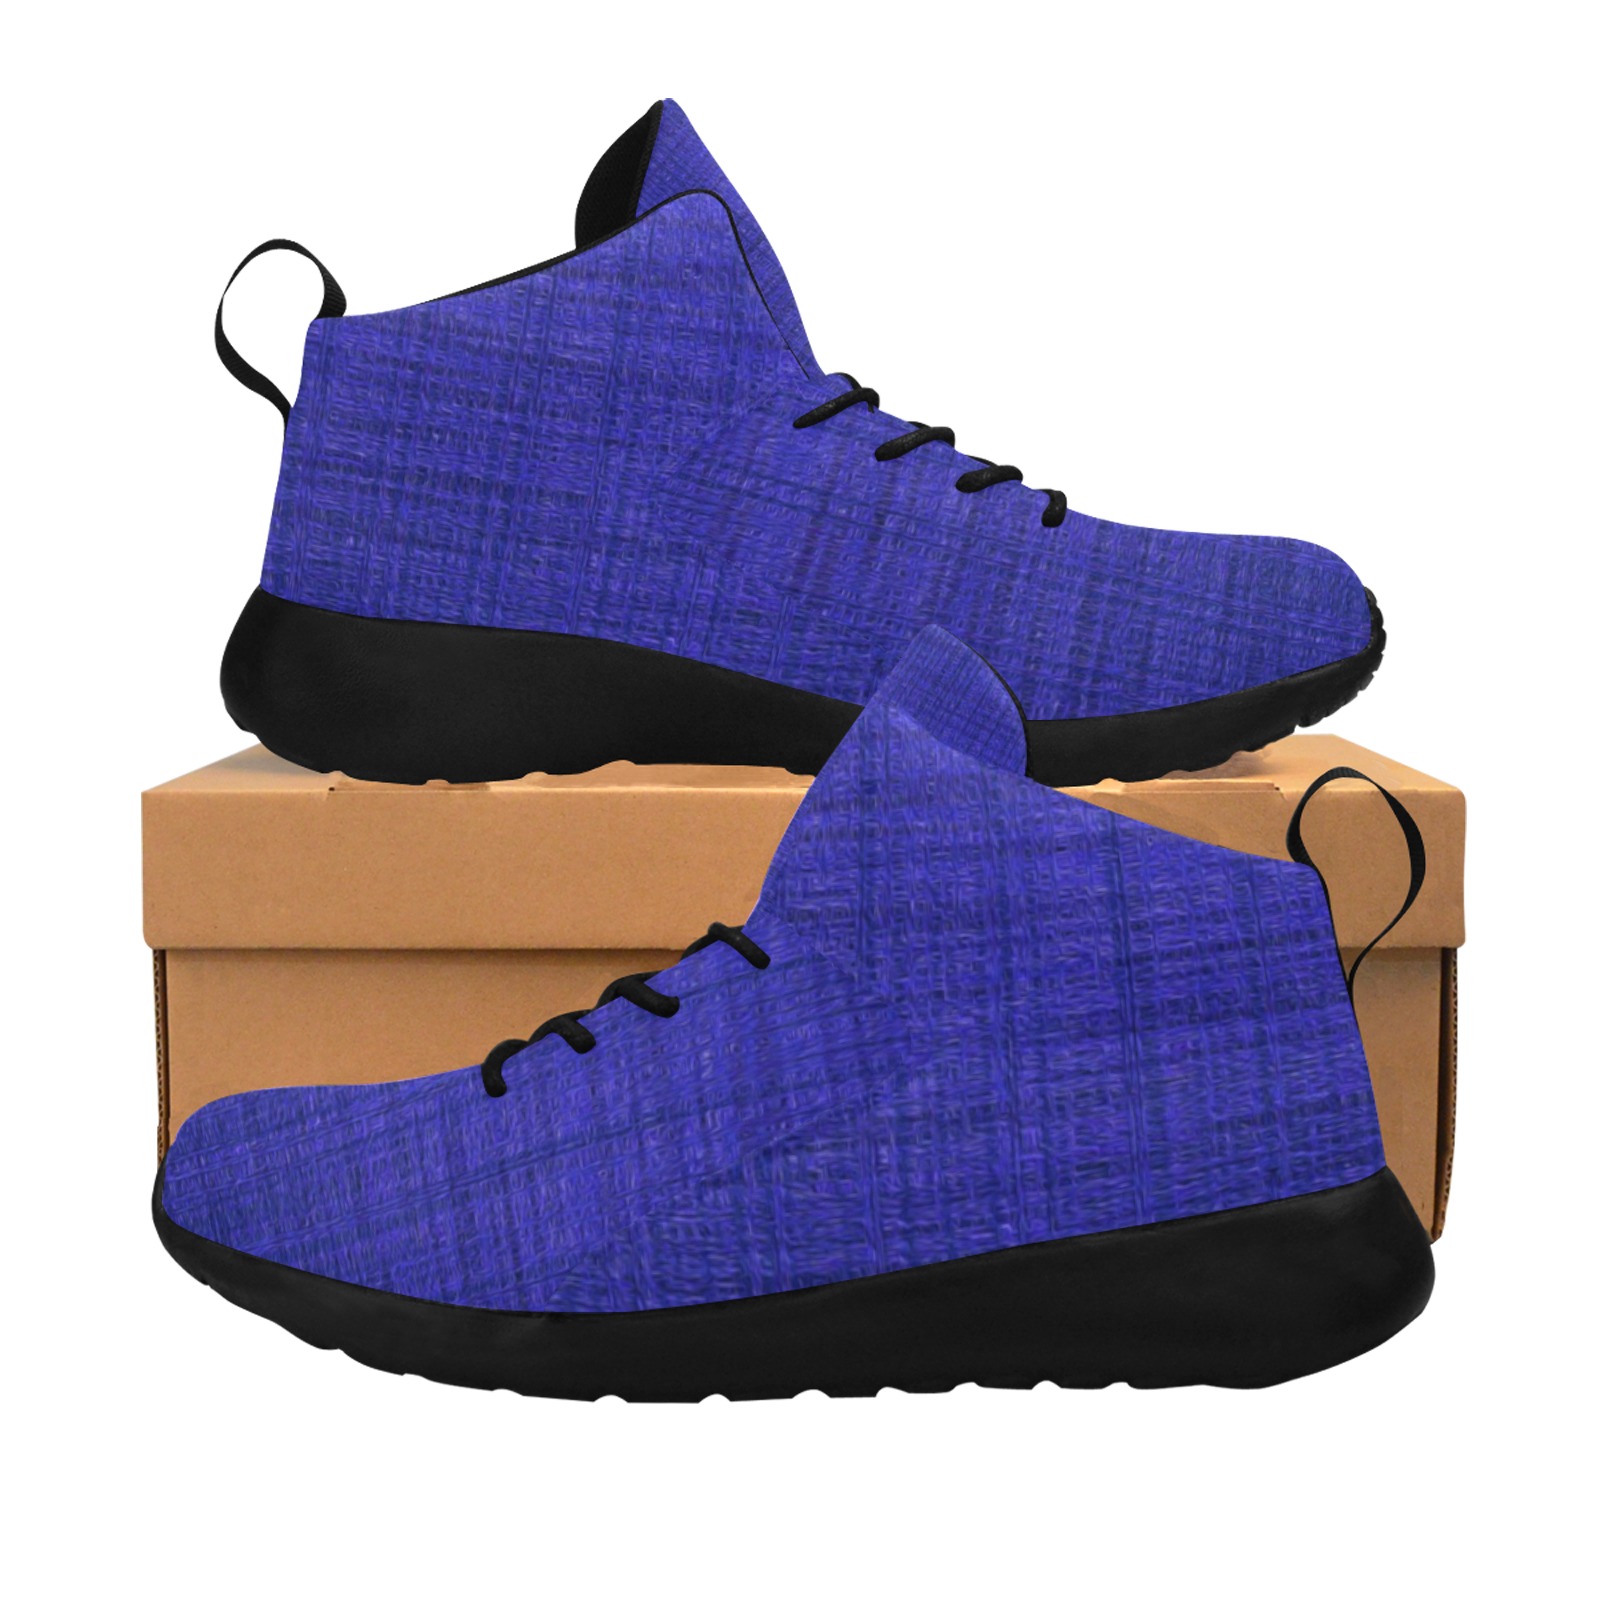 BluePlaid Women's Chukka Training Shoes (Model 57502)